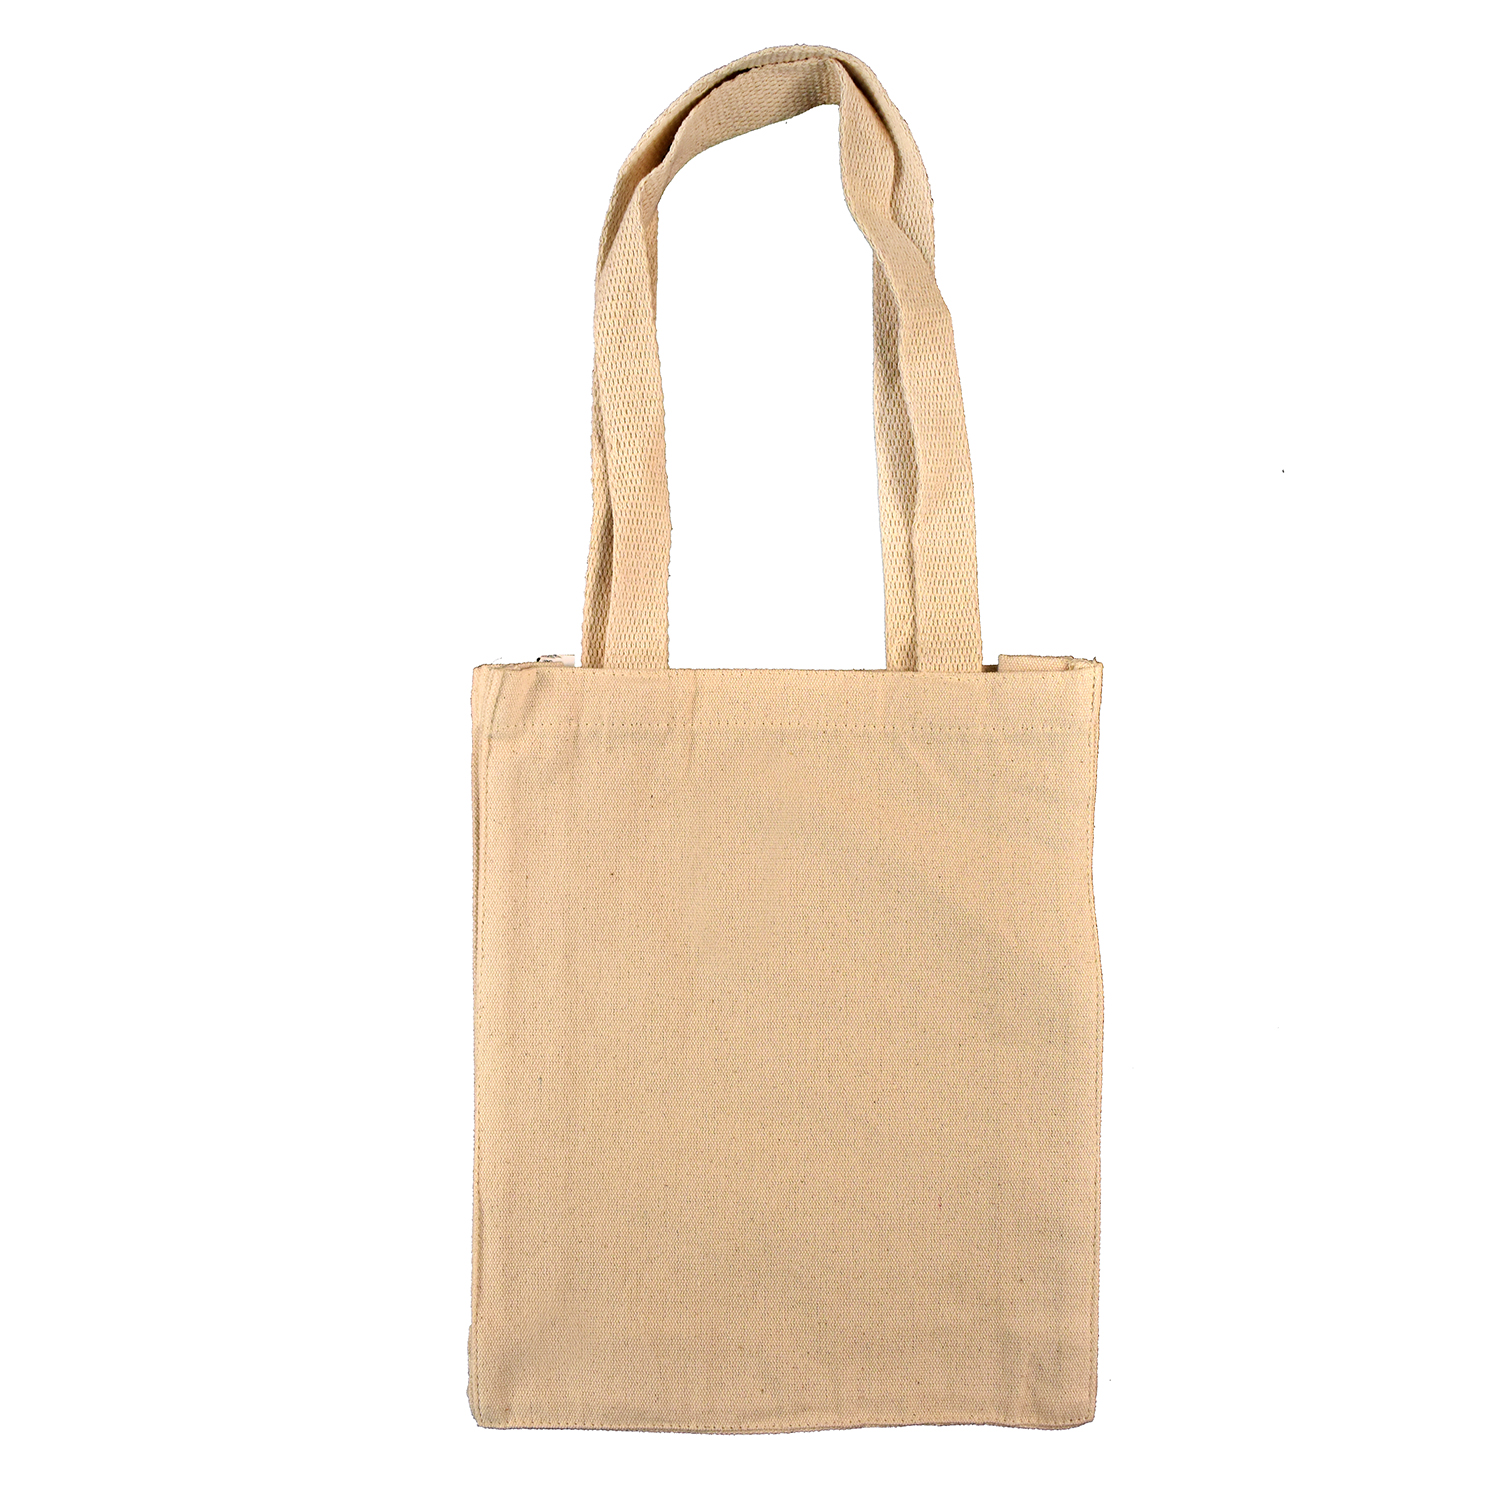 B9235 - Cotton Canvas Book Bag Tote - Ecorite